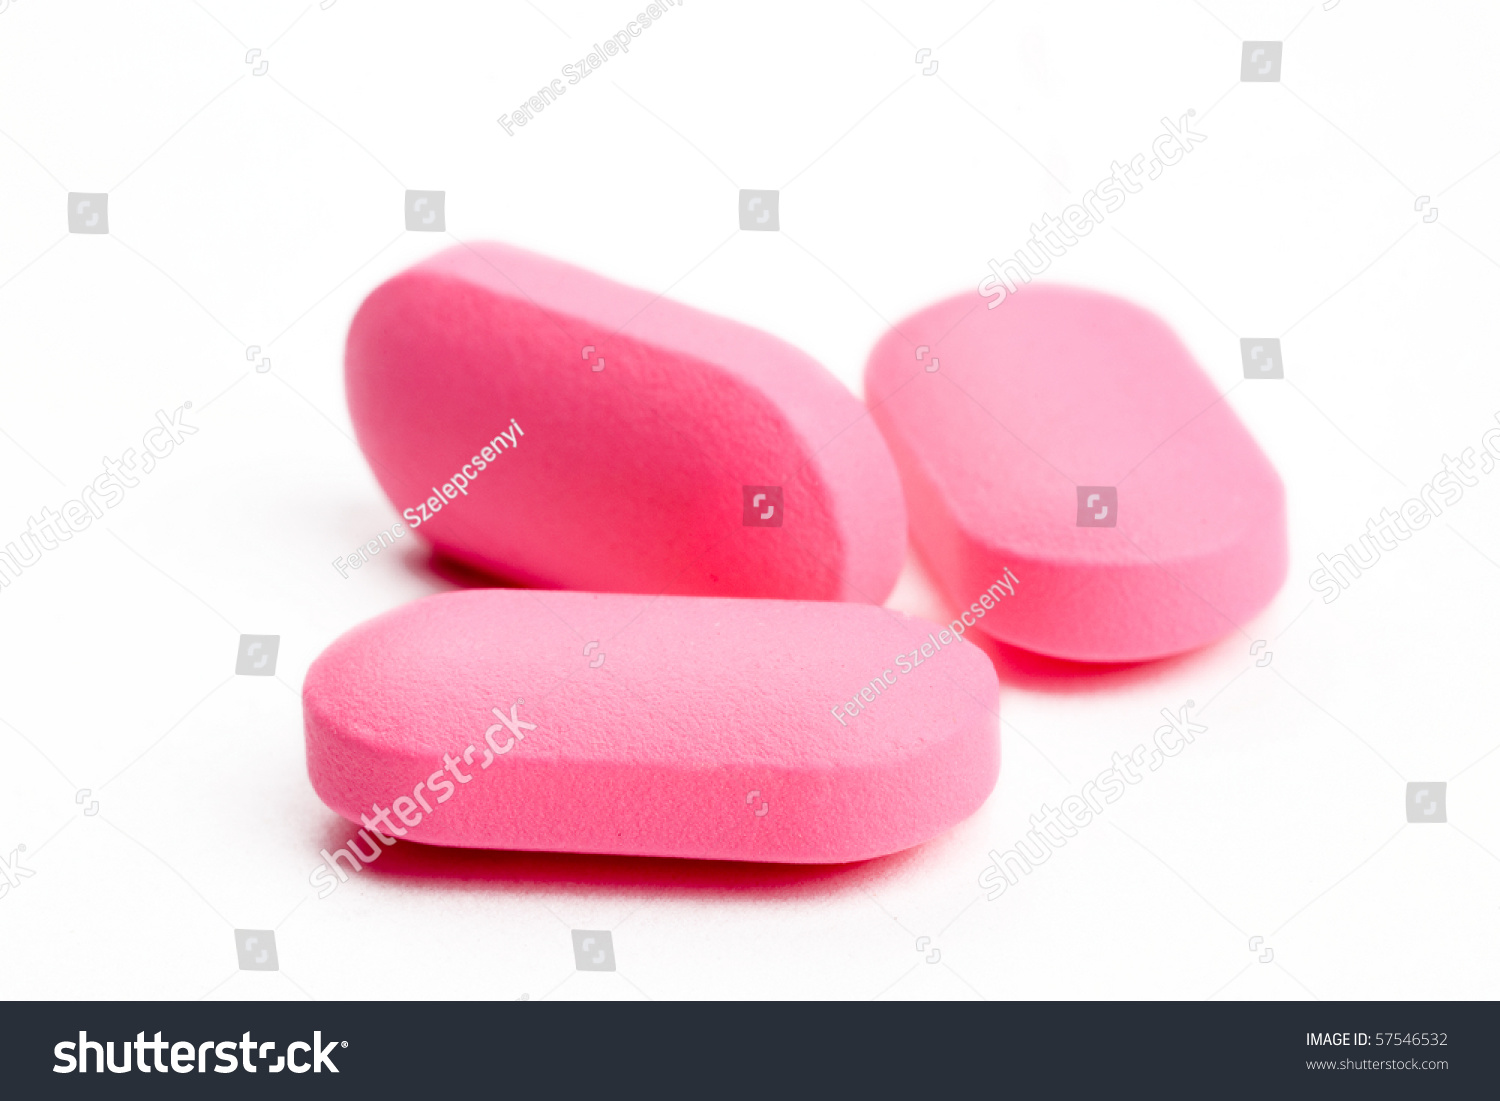 Closeup Three Pink Pills: стоковая фотография (редактировать), 57546532.